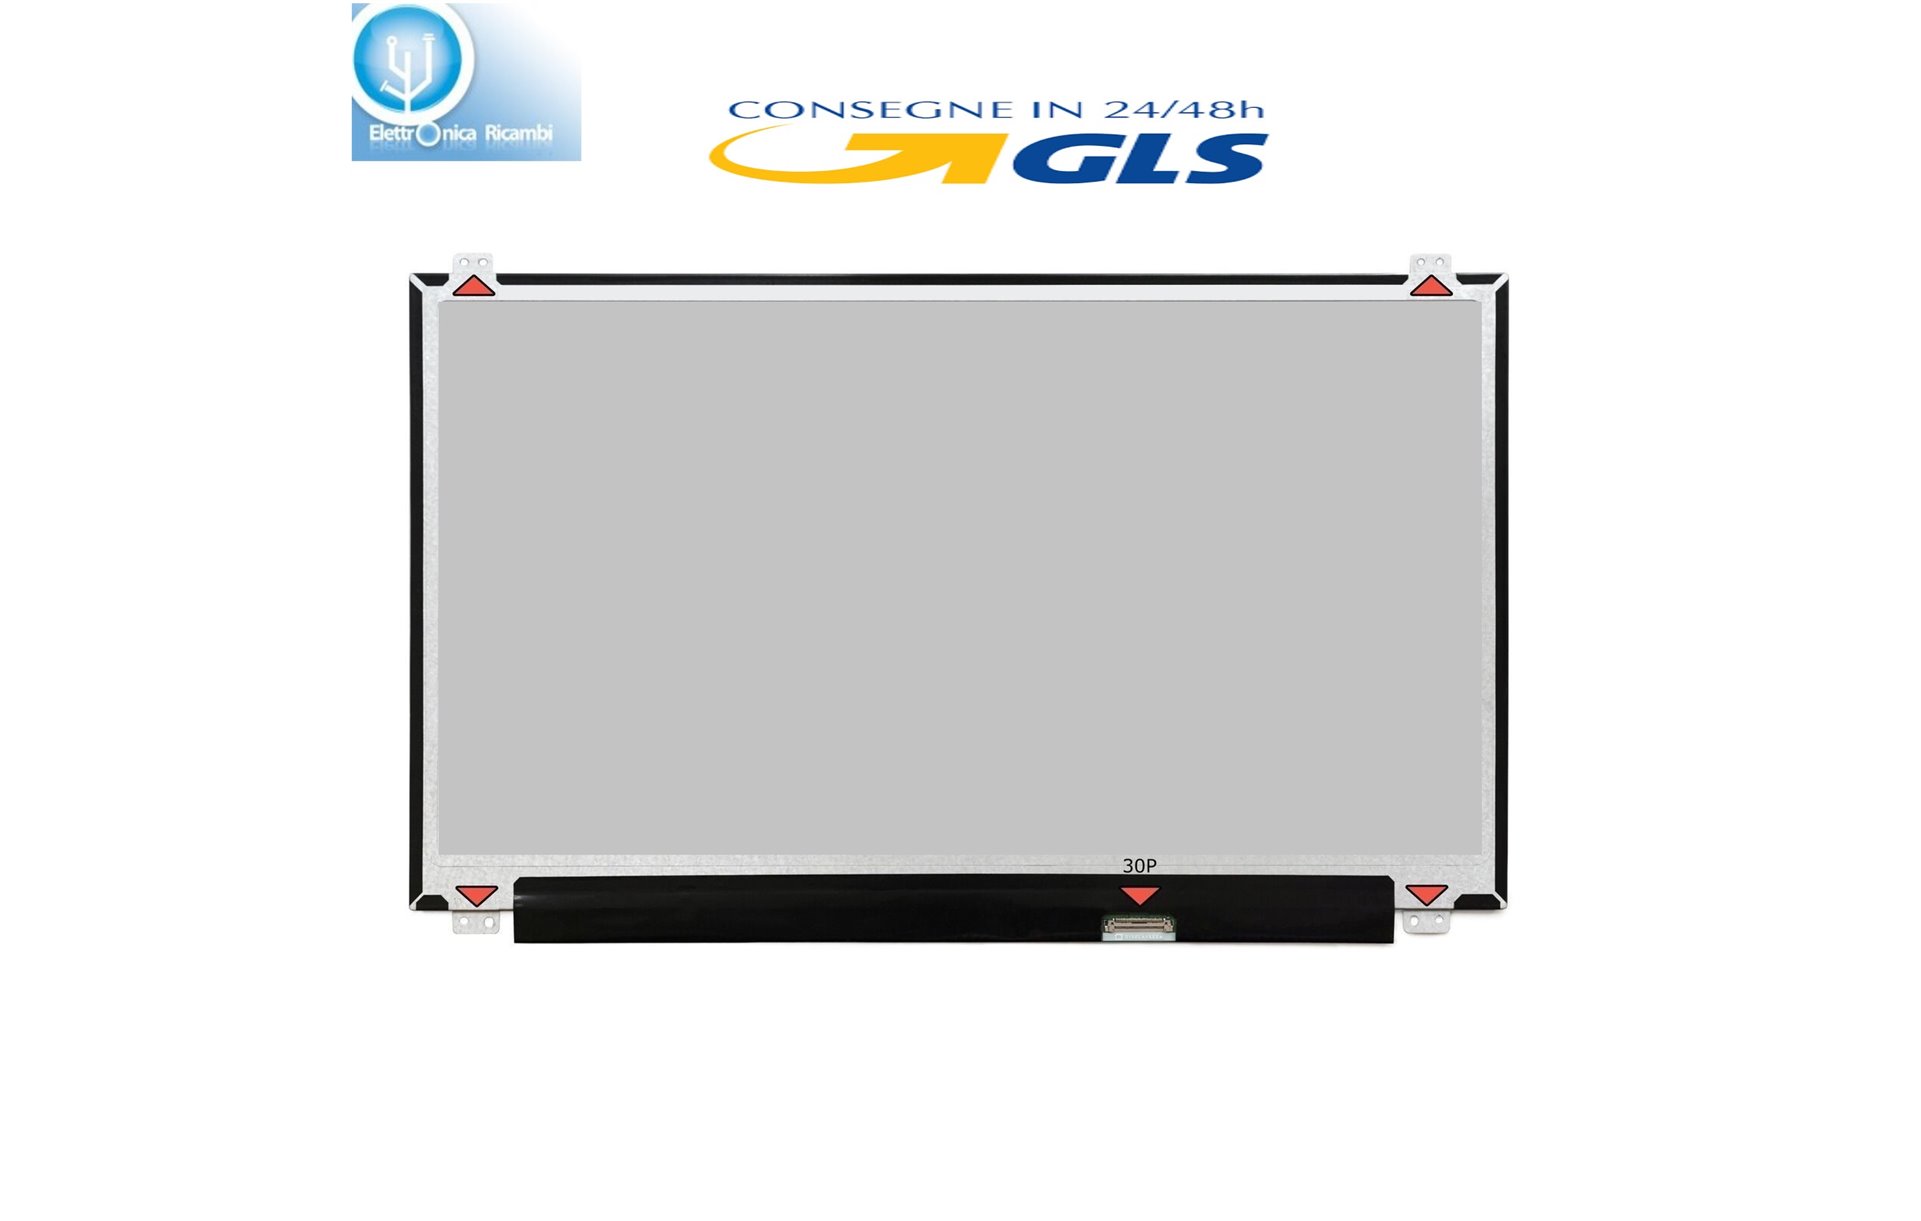 Display LCD Fujitsu LIFEBOOK E458 15,6 LED 1366X768 30 PIN